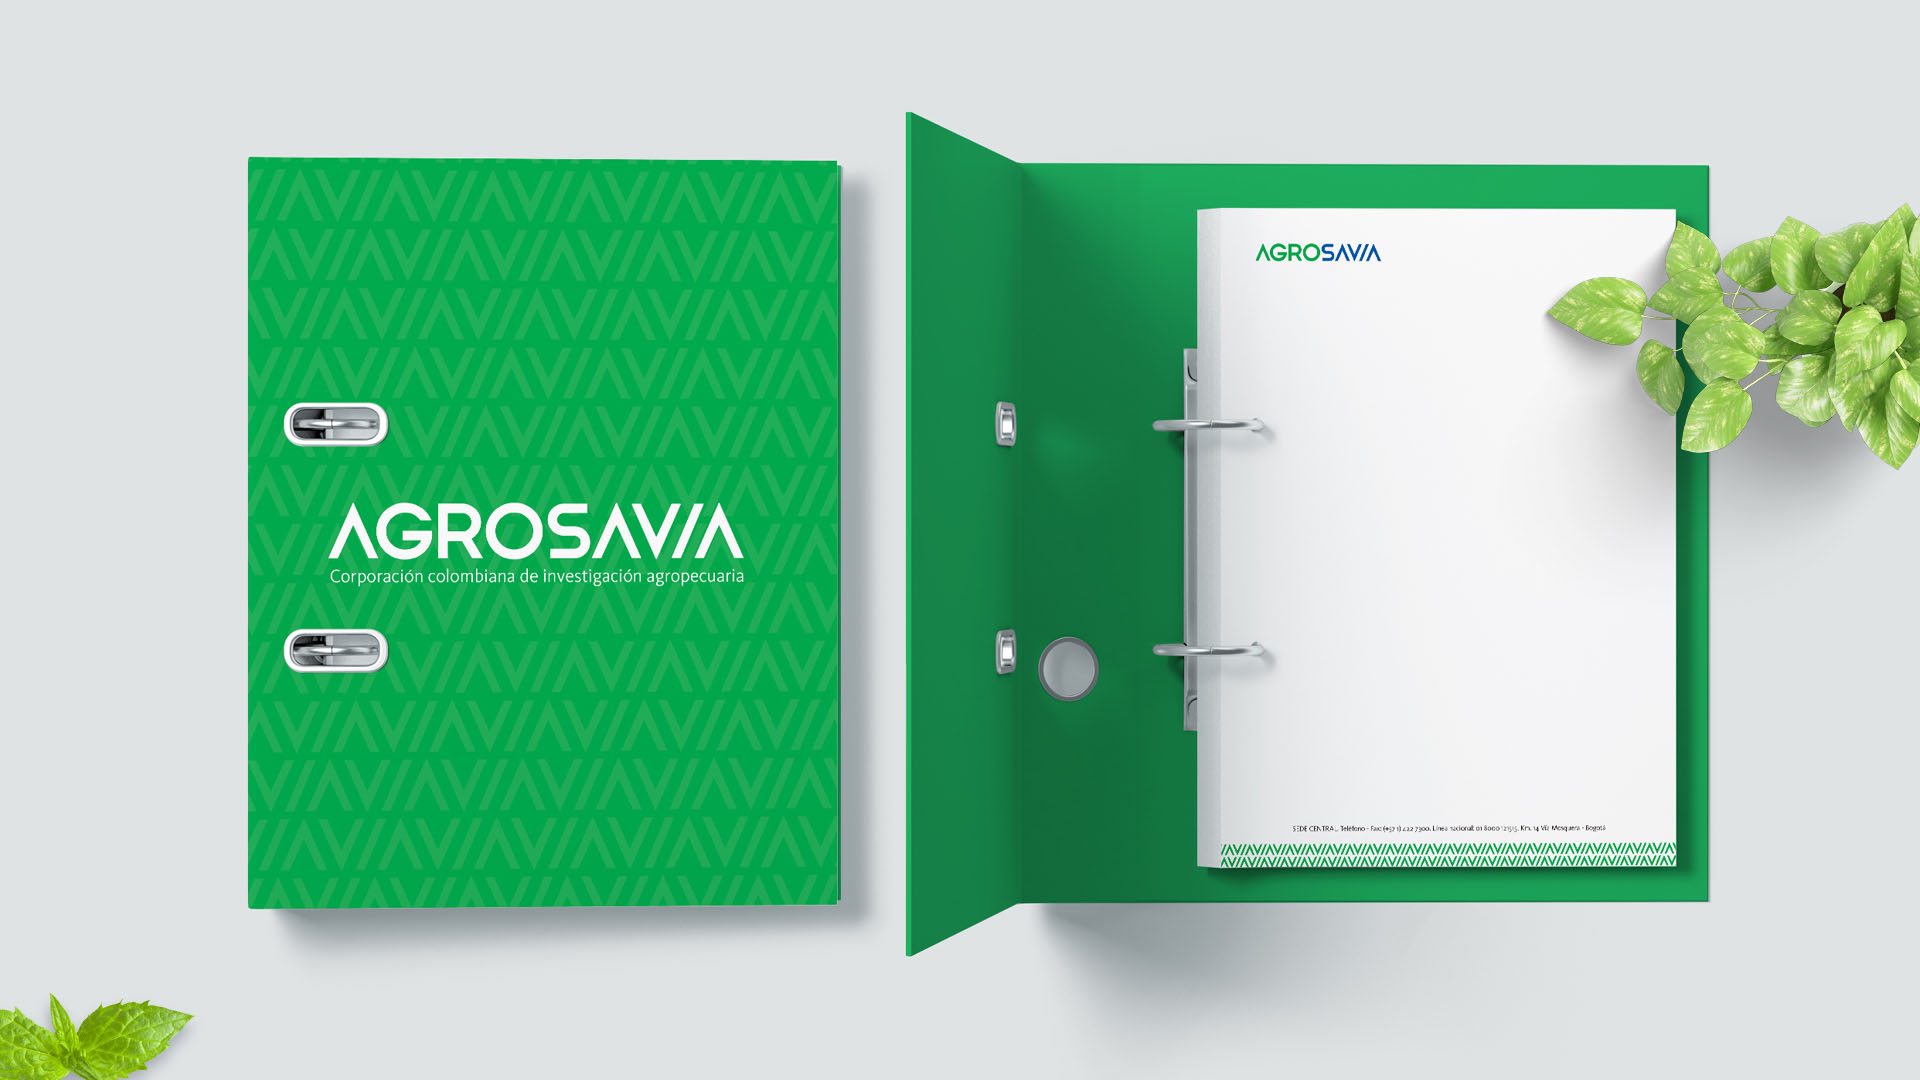 Diseño de Imagen corporativa y diseño gráfico. Diseño de papelería para la marca Agrosavia